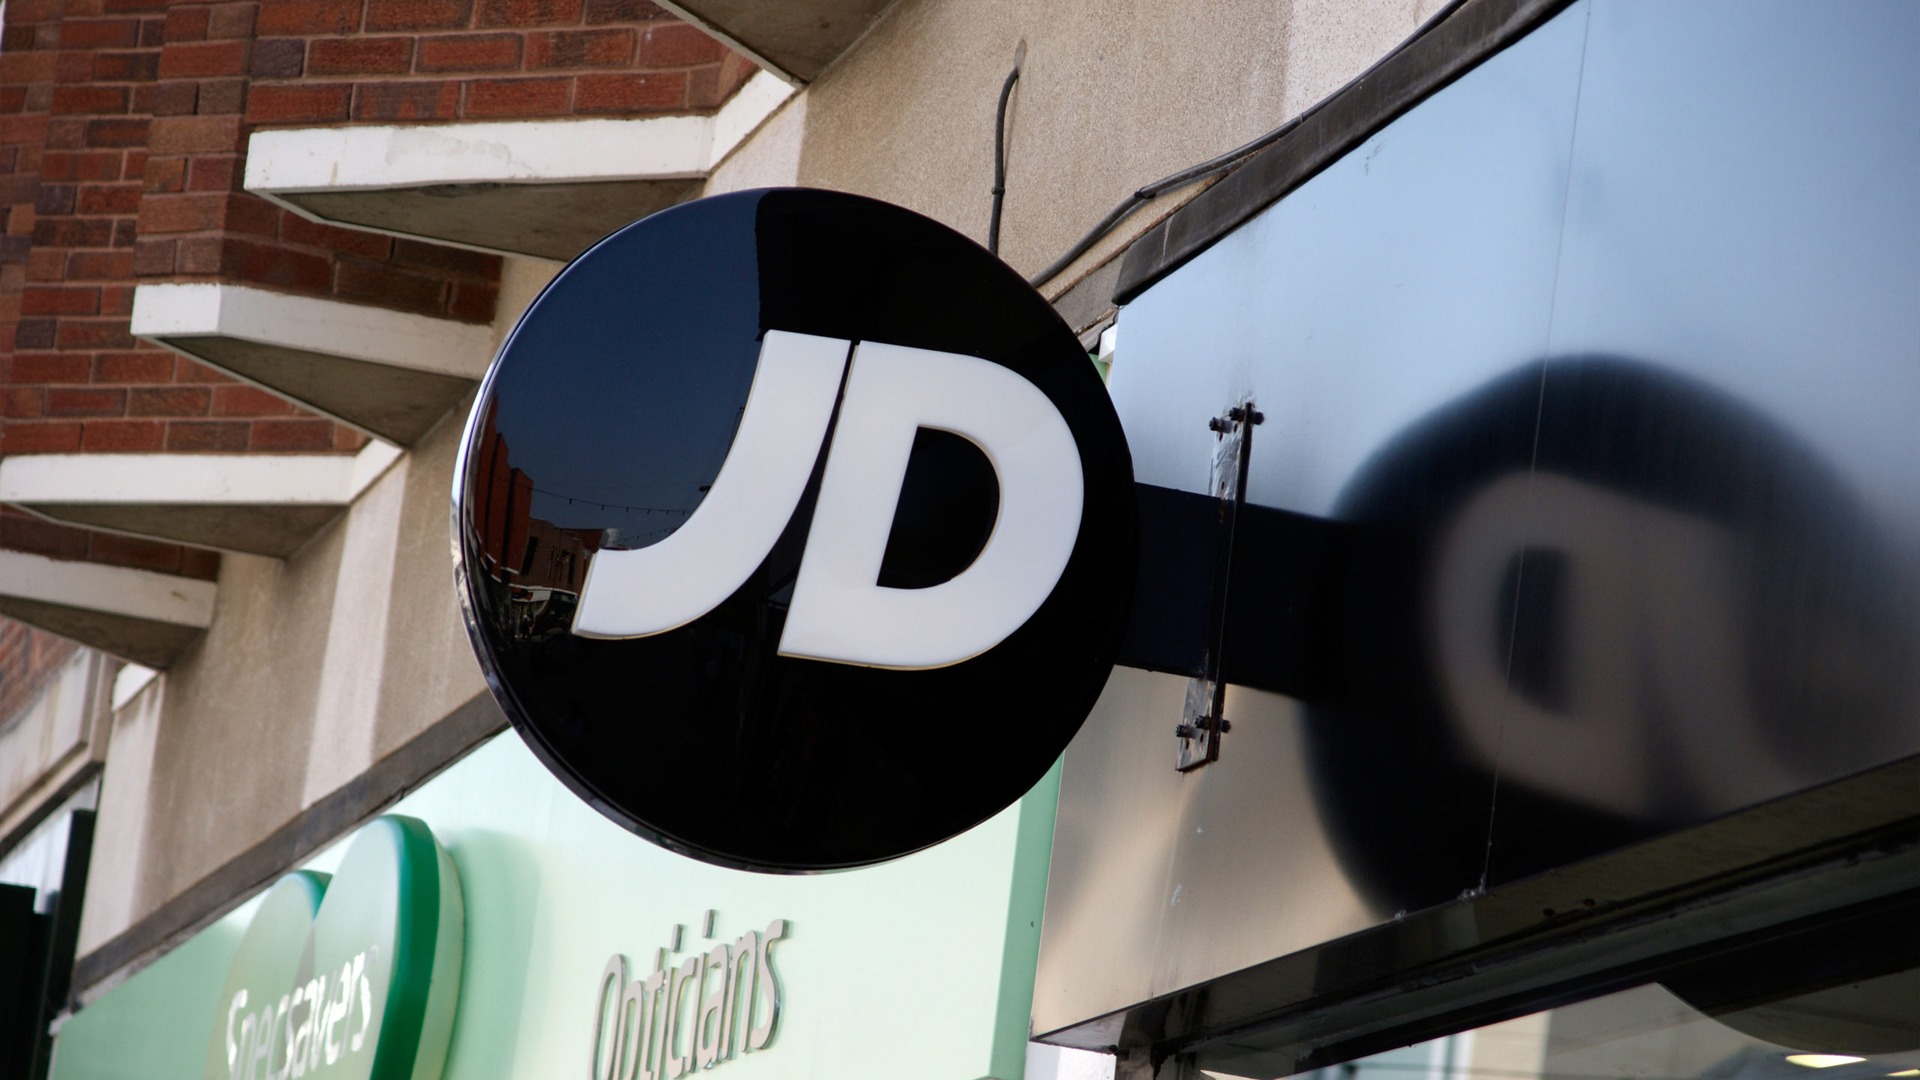 De Nederlandse dochteronderneming van JD Sports heeft faillissement uitgesproken